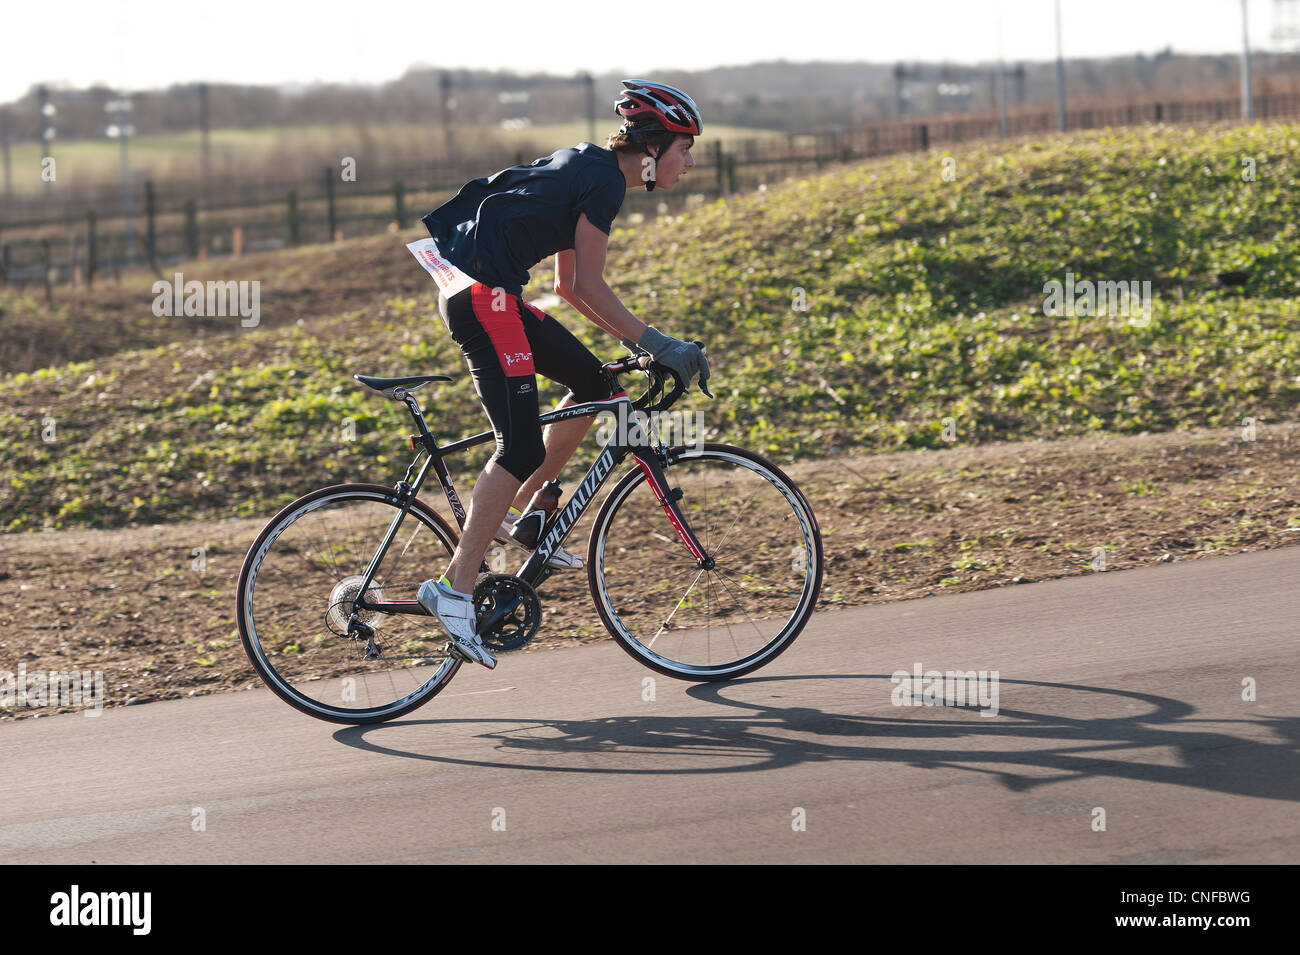 Février TT time trial vélo comme partie d'un duathalon , tri-athlète de triathlon super série formation Grande-bretagne, vélo Banque D'Images